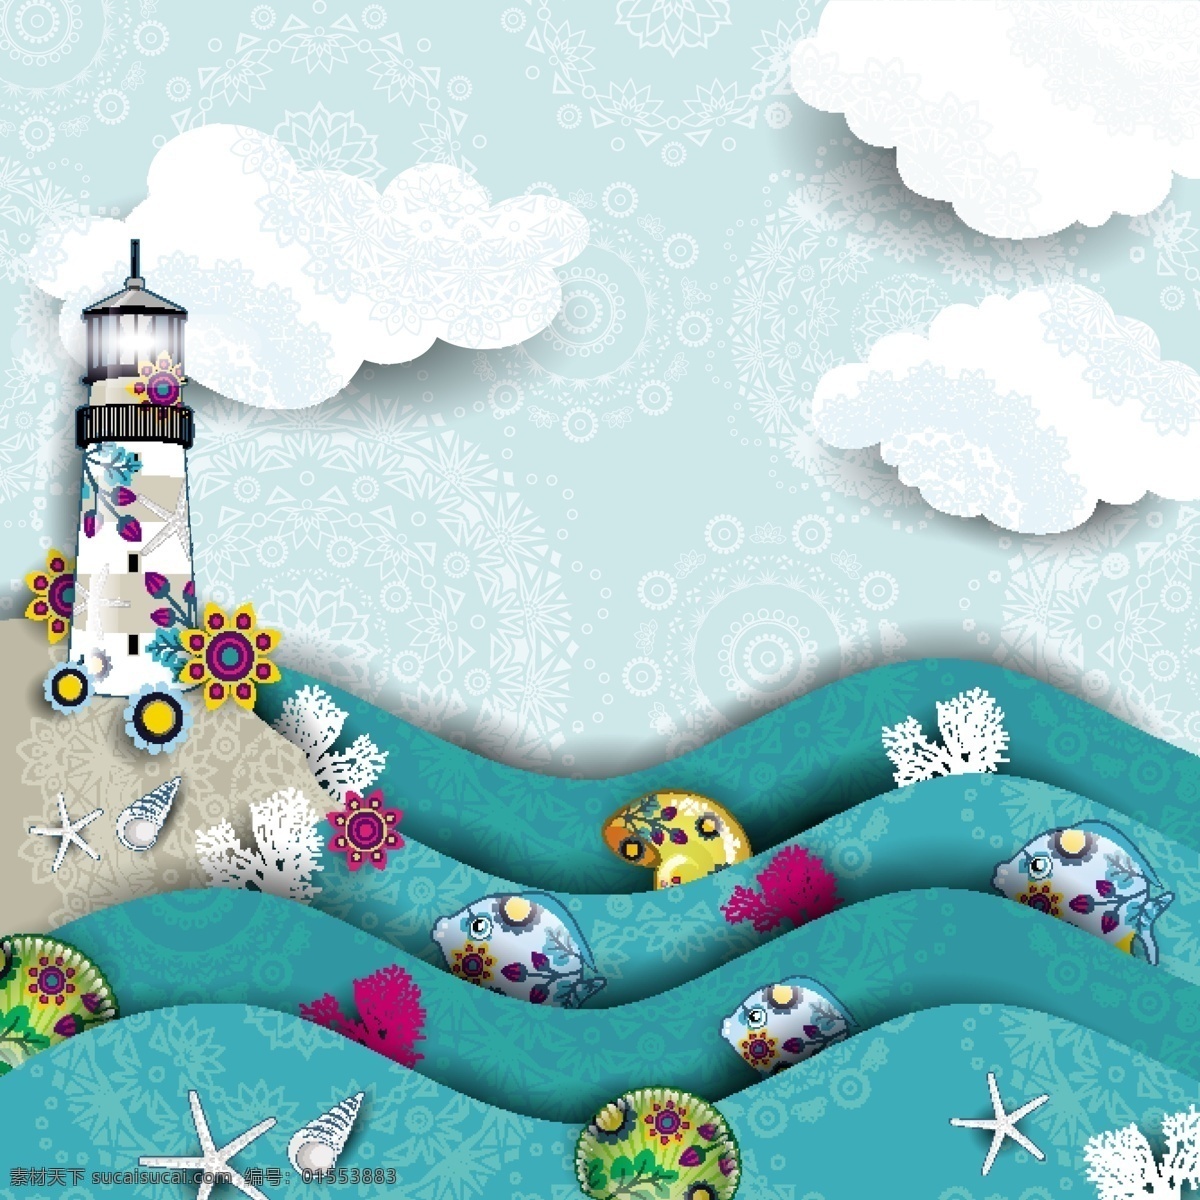 夏日 沙滩 海洋 帆船 矢量 海浪 灯塔 风景 创意 涂鸦 小清新 卡通 填充 插画 背景 海报 广告 包装 印刷 夏天